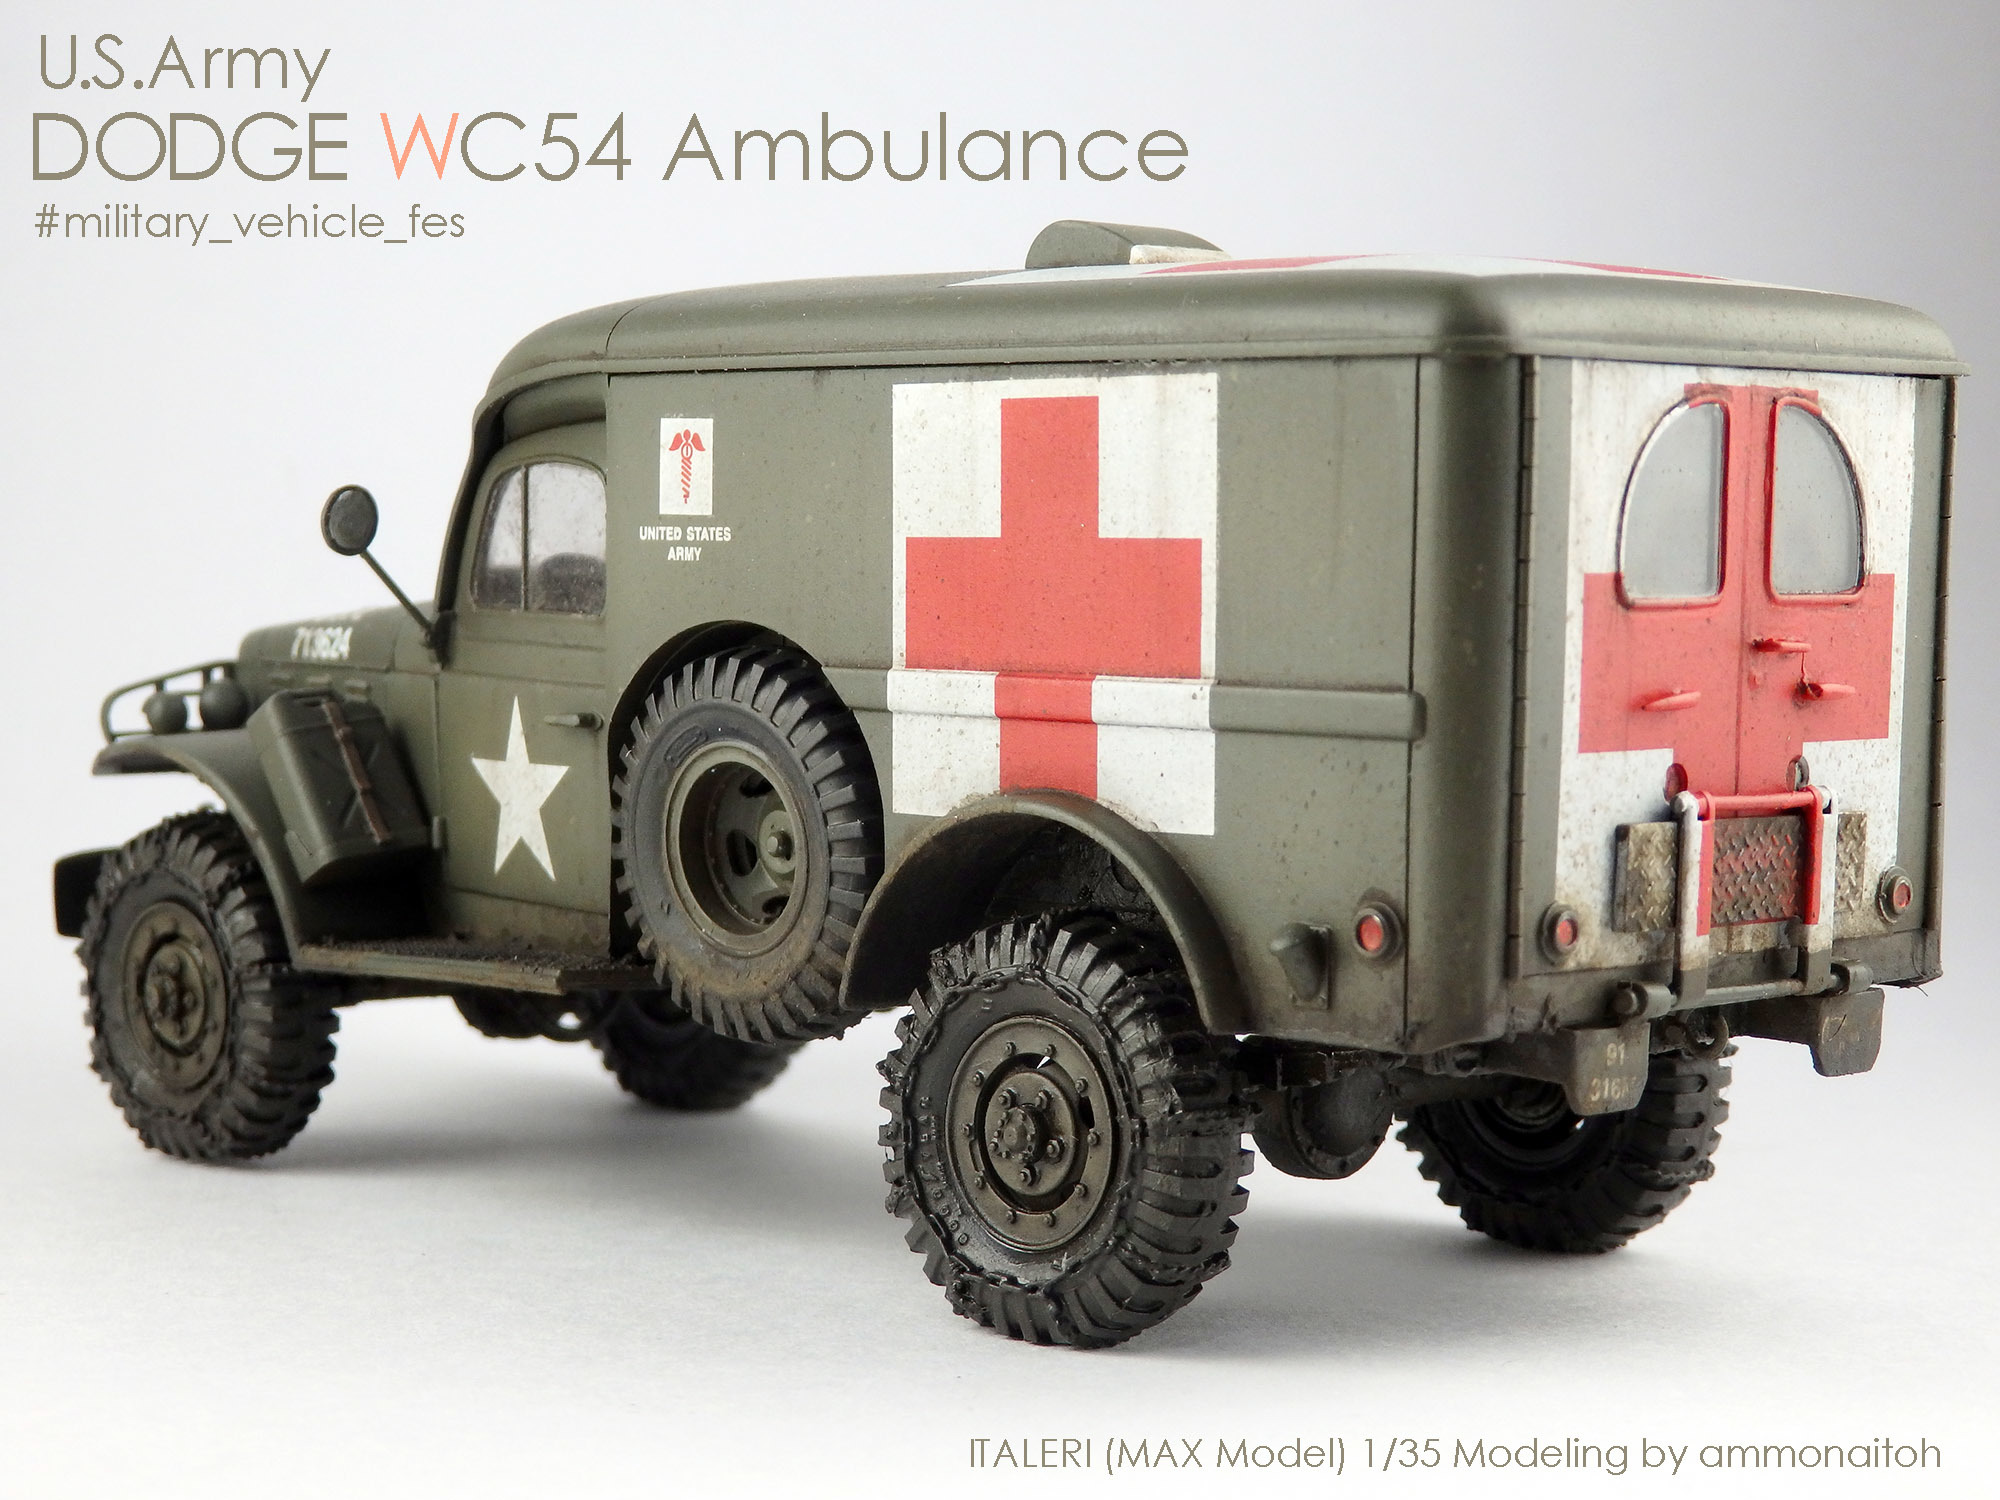 イタレリ(マックス模型)1/35 ダッジWC54野戦救急車を作る - ナイトウ